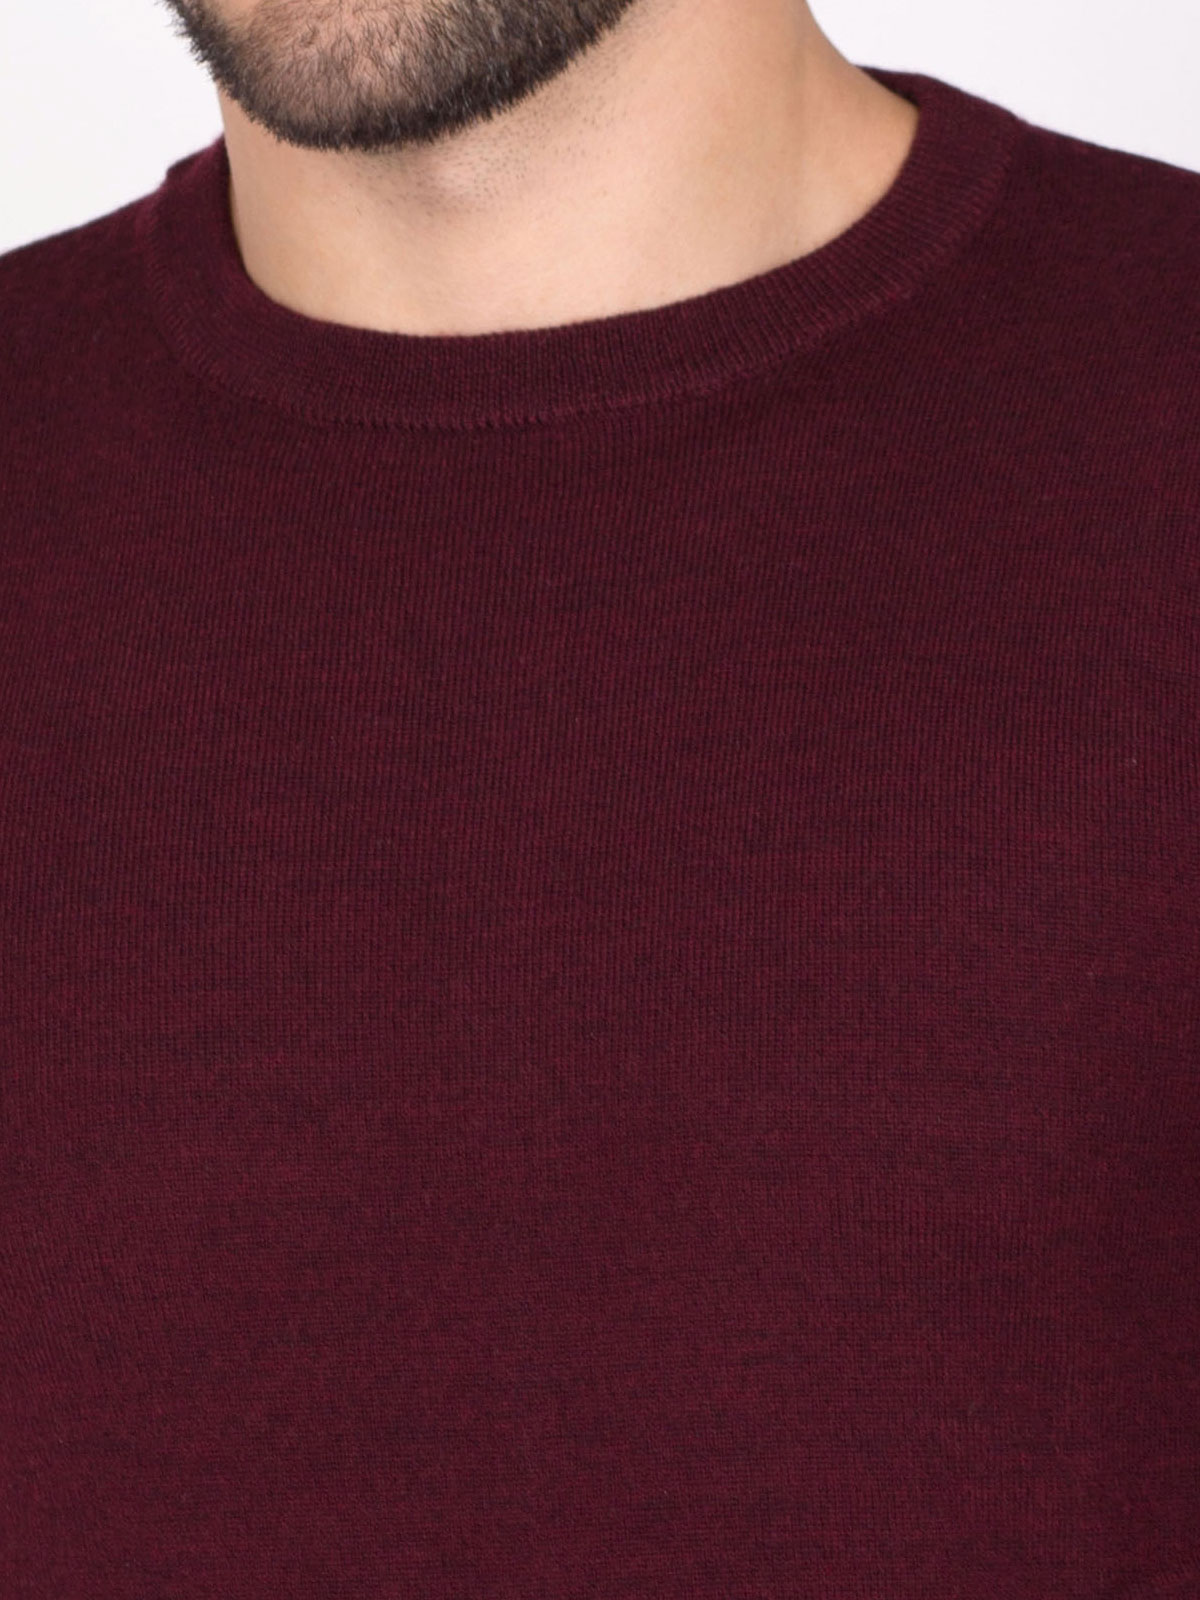 Бордо пуловер с вълна мерино - 33088 62.00 лв img3